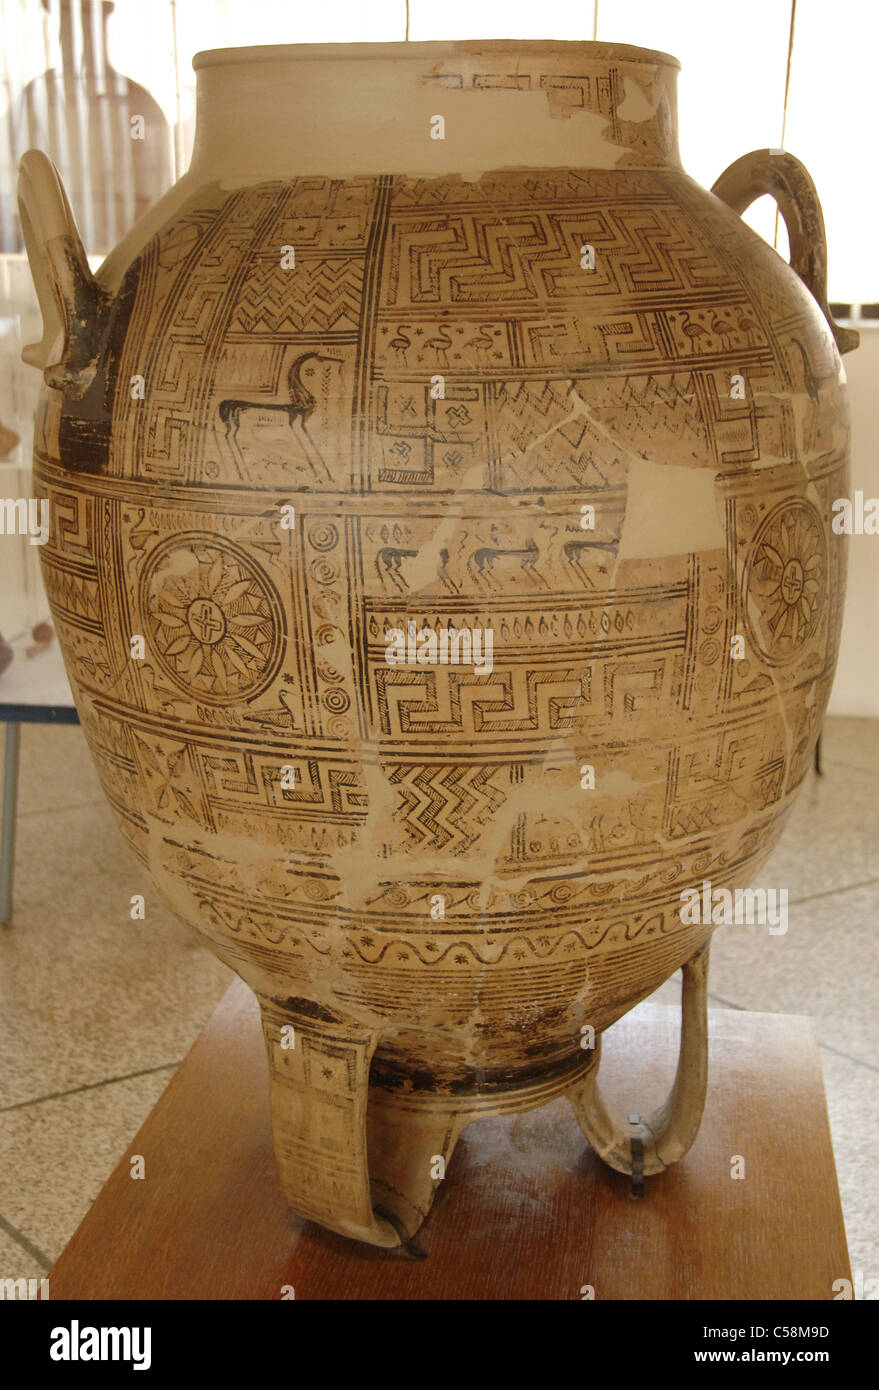 Treppiede vaso. Inizio periodo geometrico (900-850 a.C.). Argos Museo Archeologico. La Grecia. Foto Stock